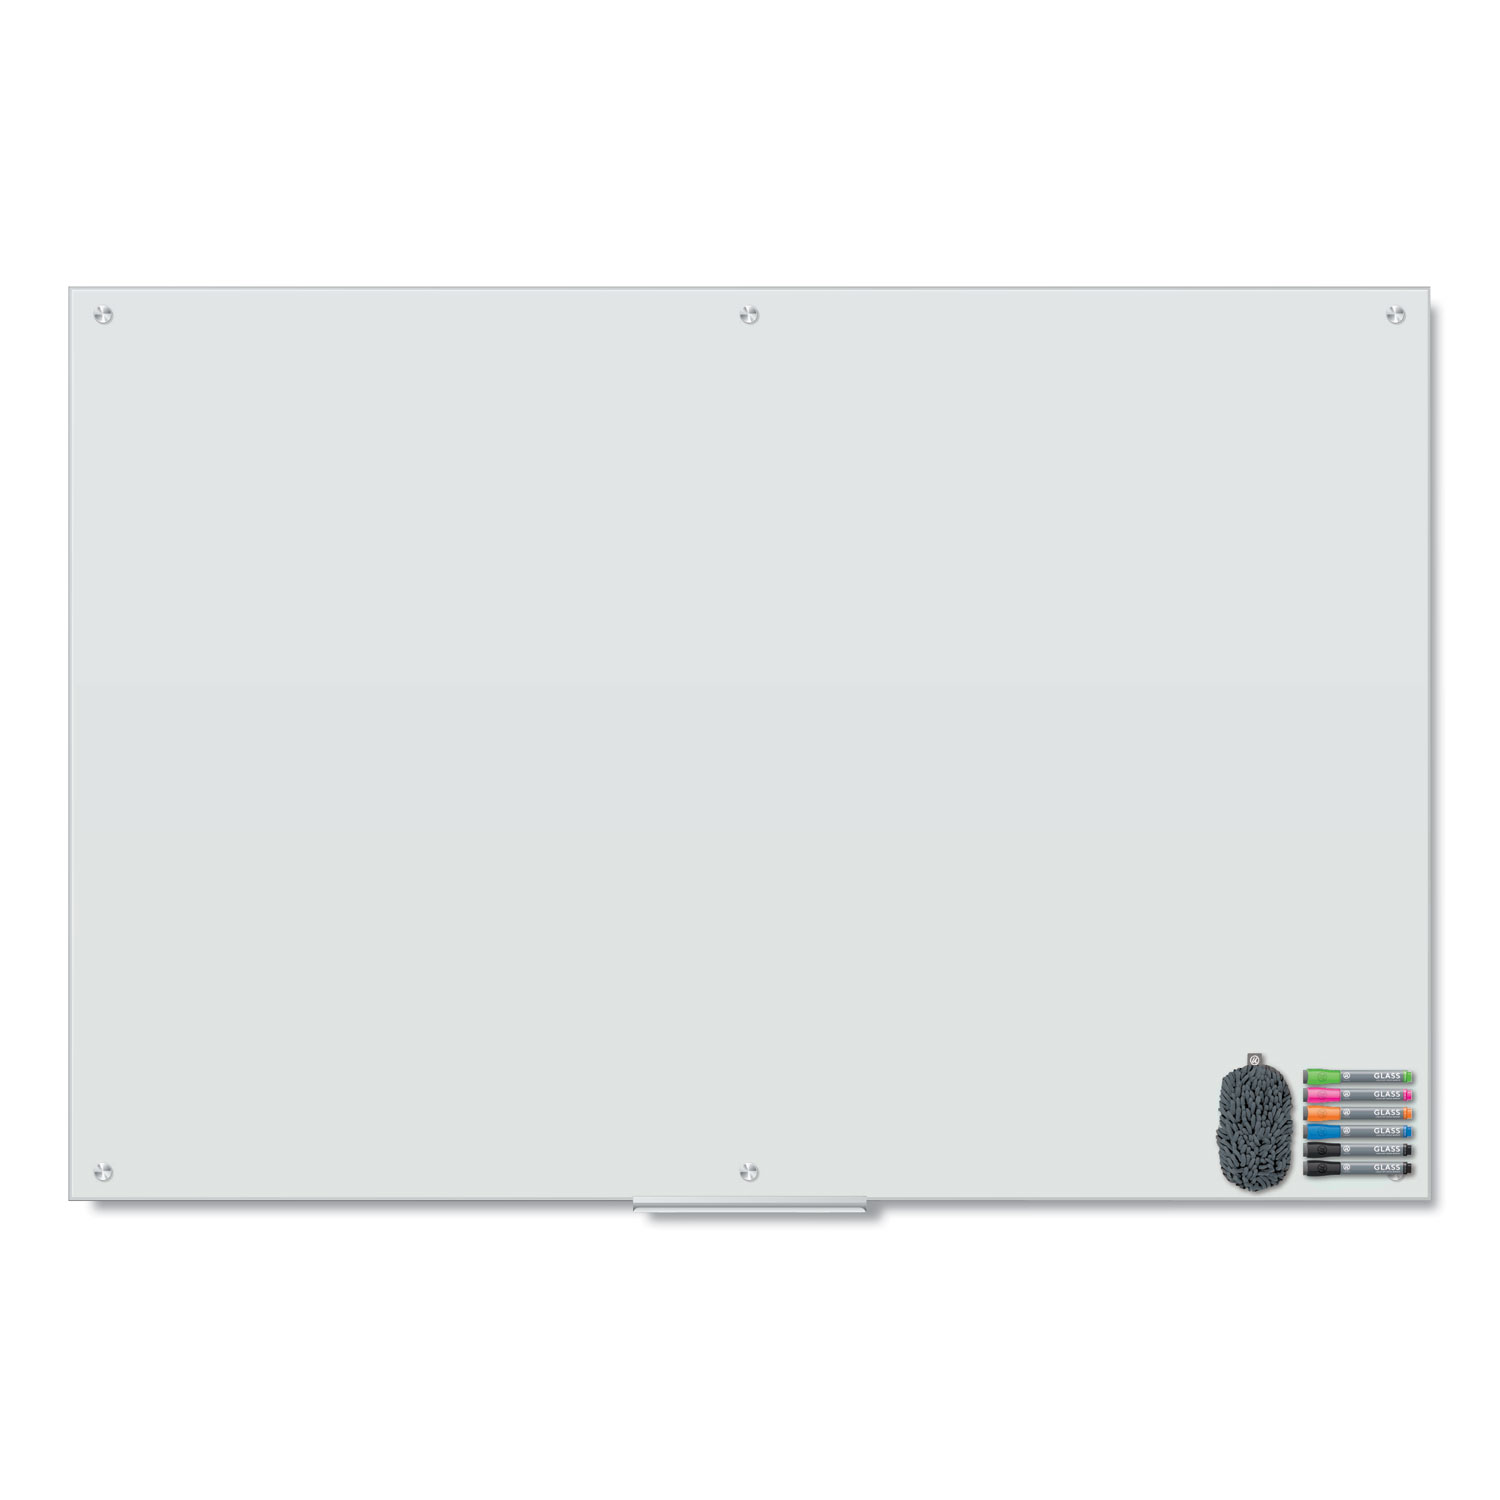  U Brands 3974U00-01 Magnetic Glass Dry Erase Board Value Pack, 72 x 48, White (UBR3974U0001) 